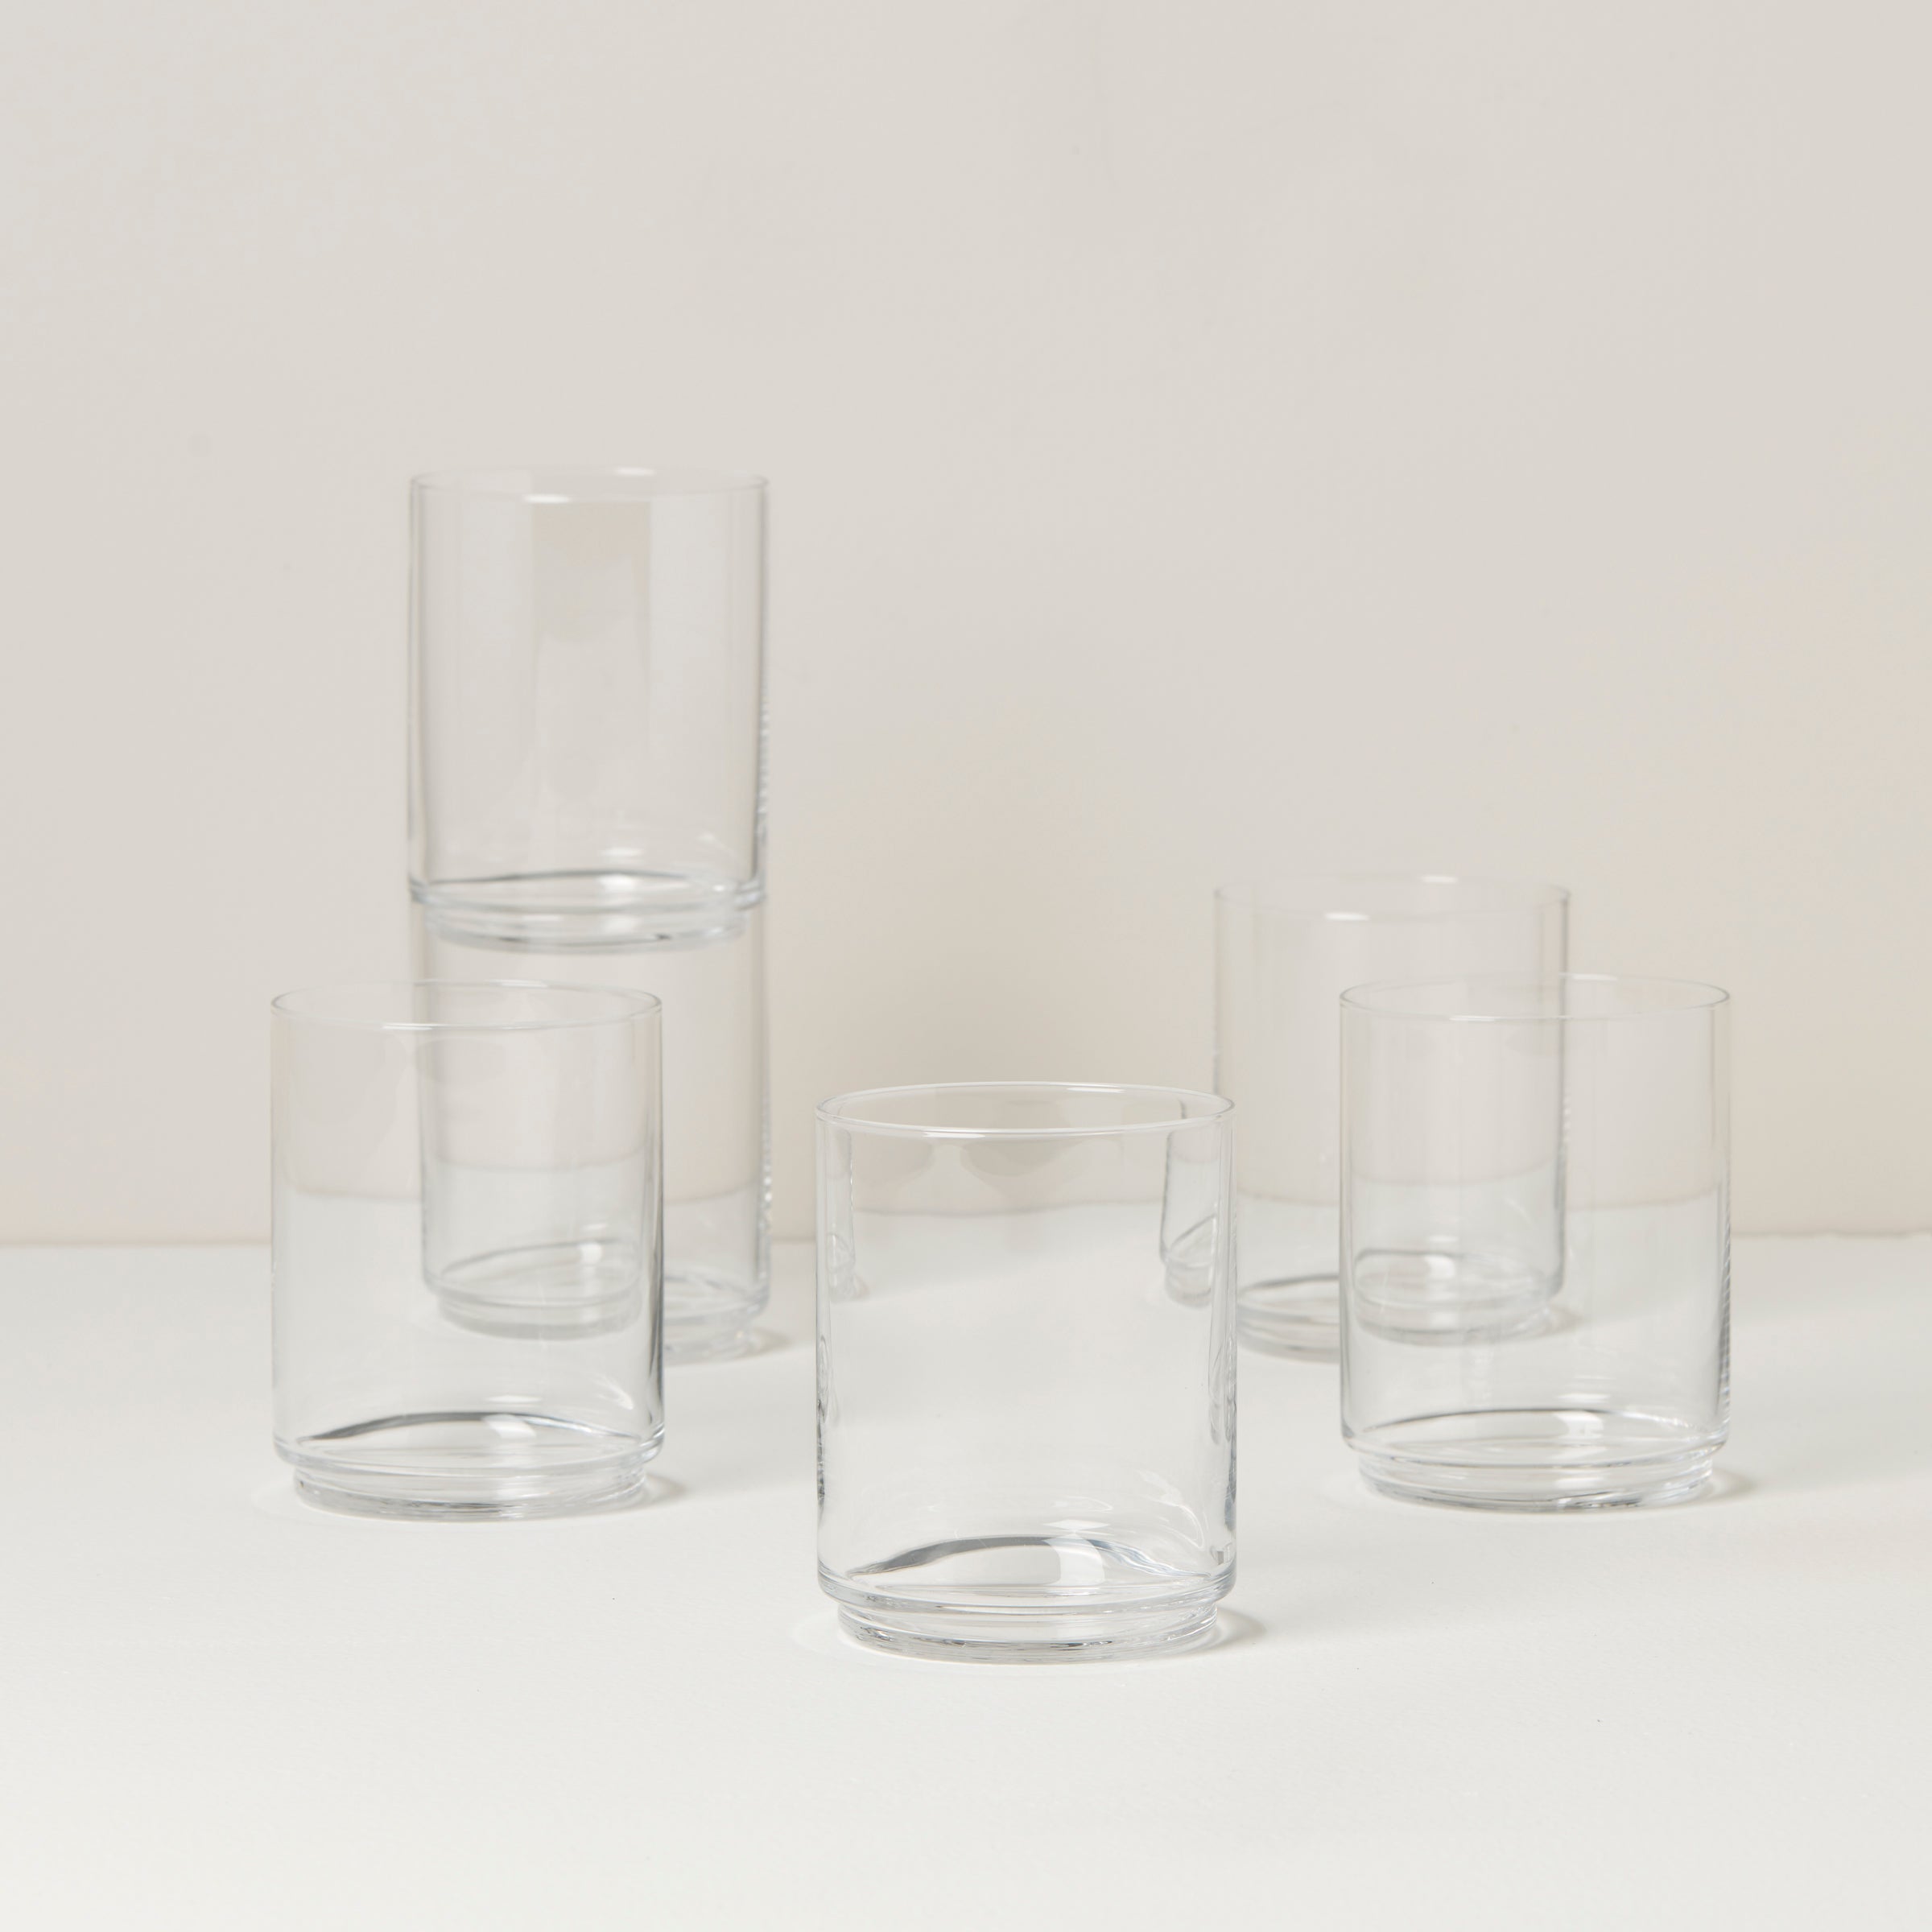 Classic Tall Glass - Ørskov @ RoyalDesign